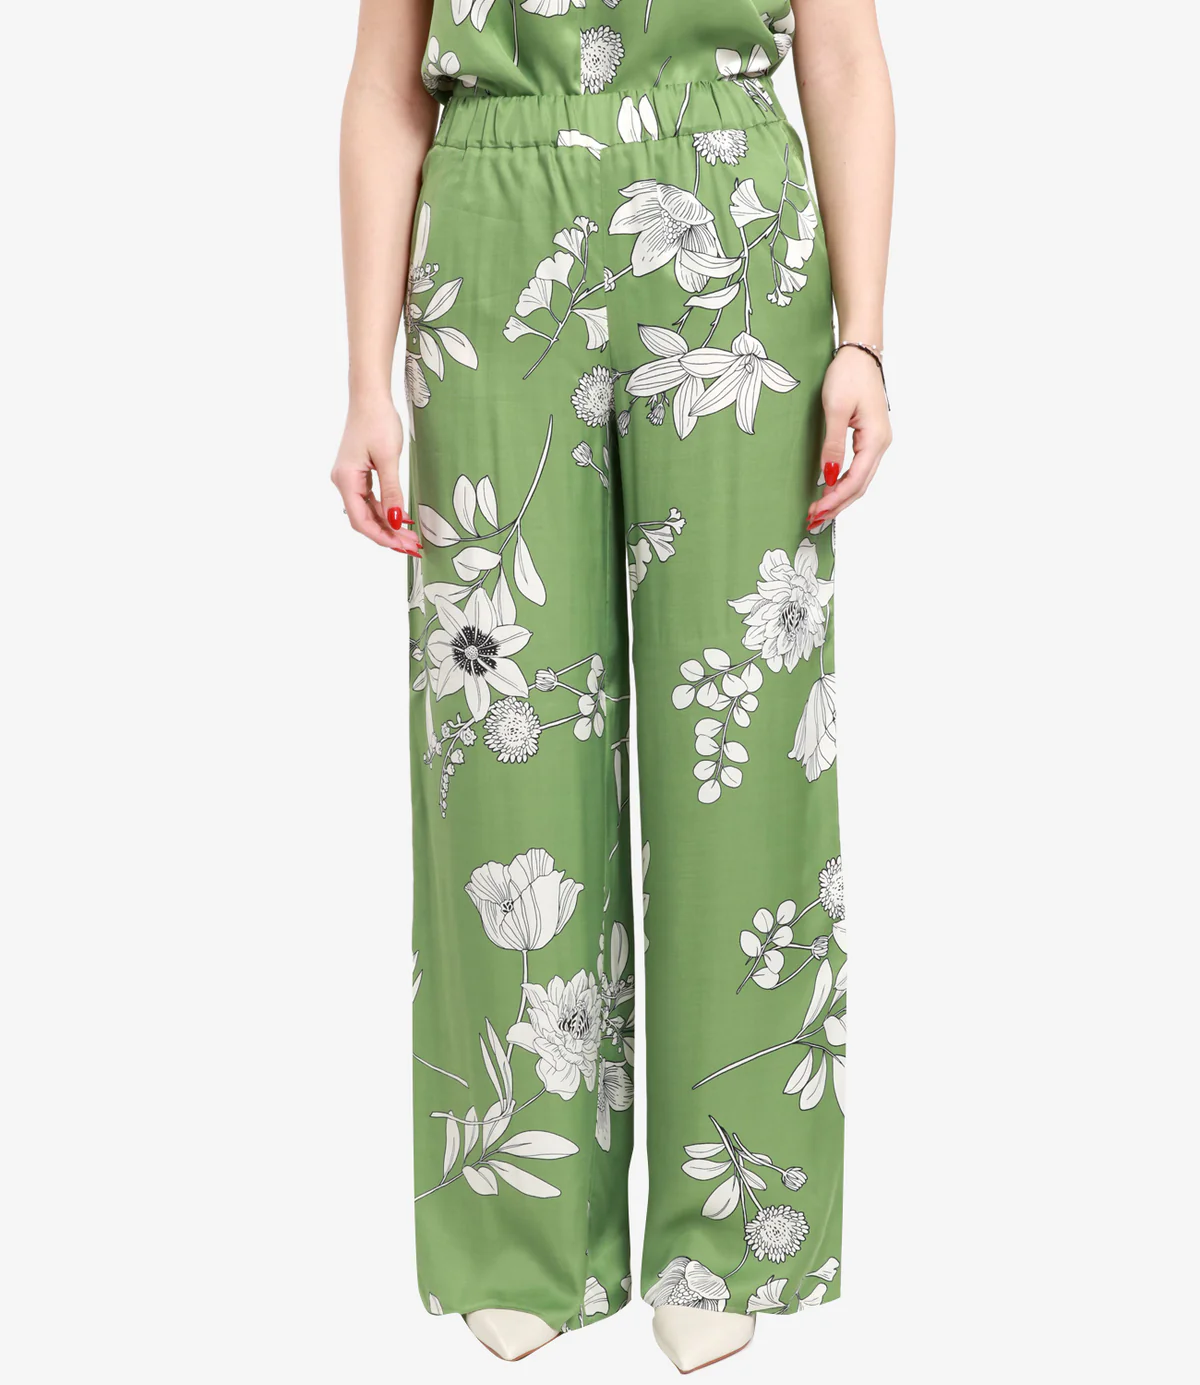 PENNYBLACK pantalón estampado en flores verde